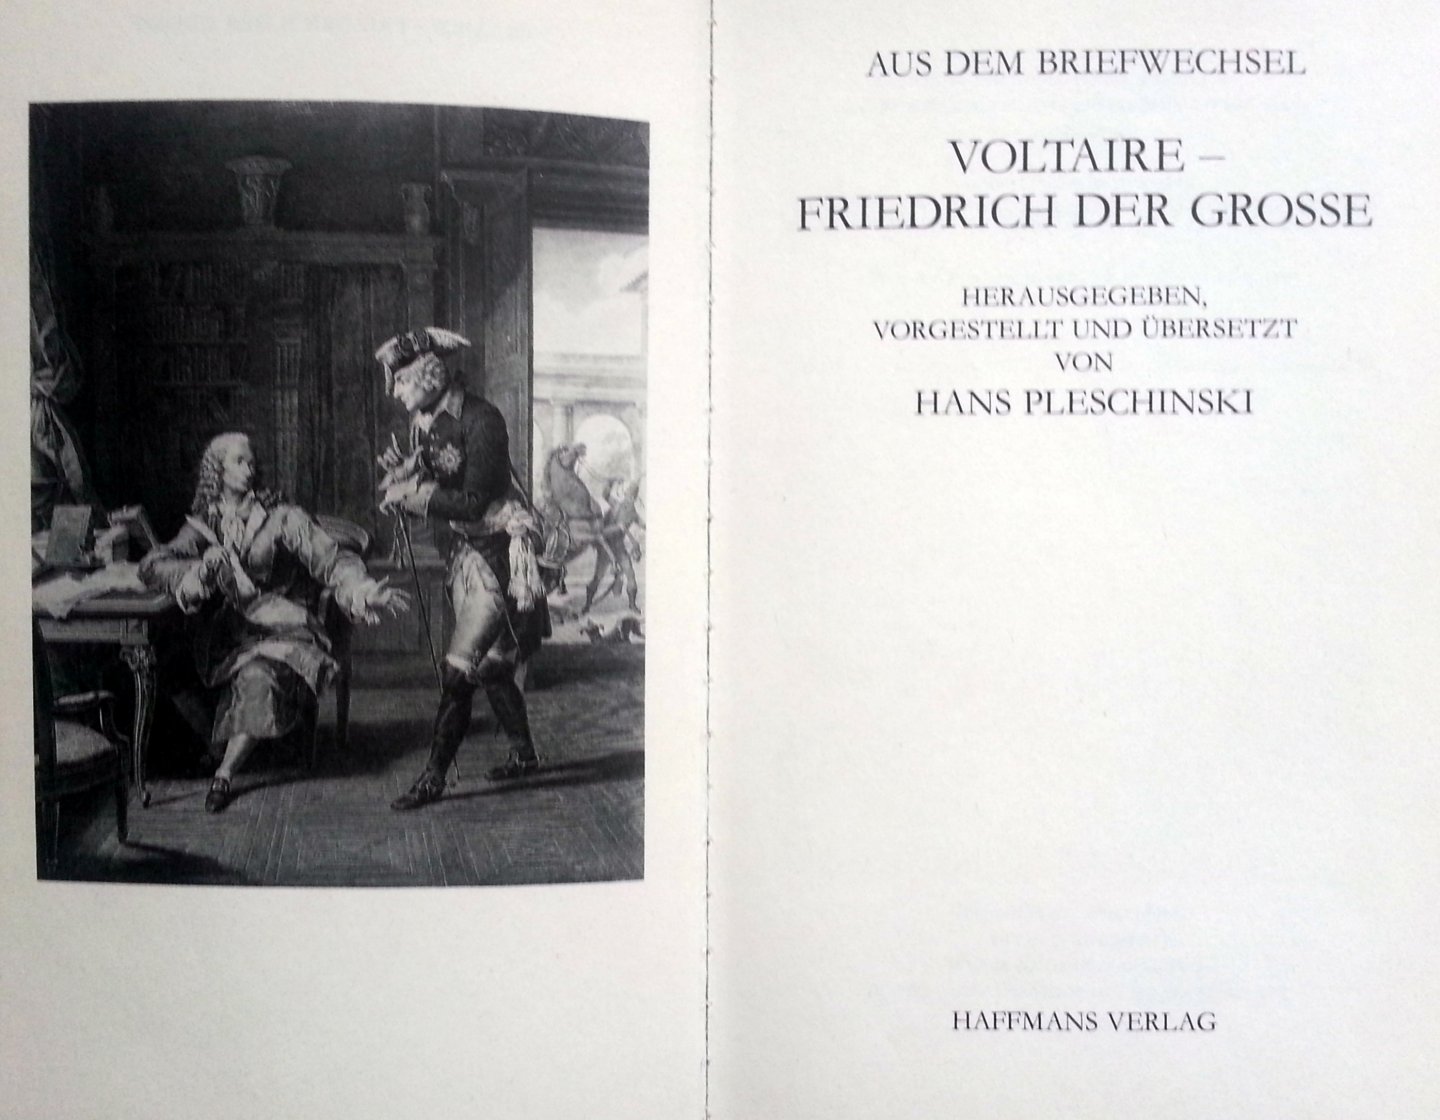 Pleschinski, Hans - Aus der Briefwechsel Voltaire - Friedrich der Grosse (DUITSTALIG) (Herausgegeben, vorgestellt und übersetzt von Hans Pleschinski)